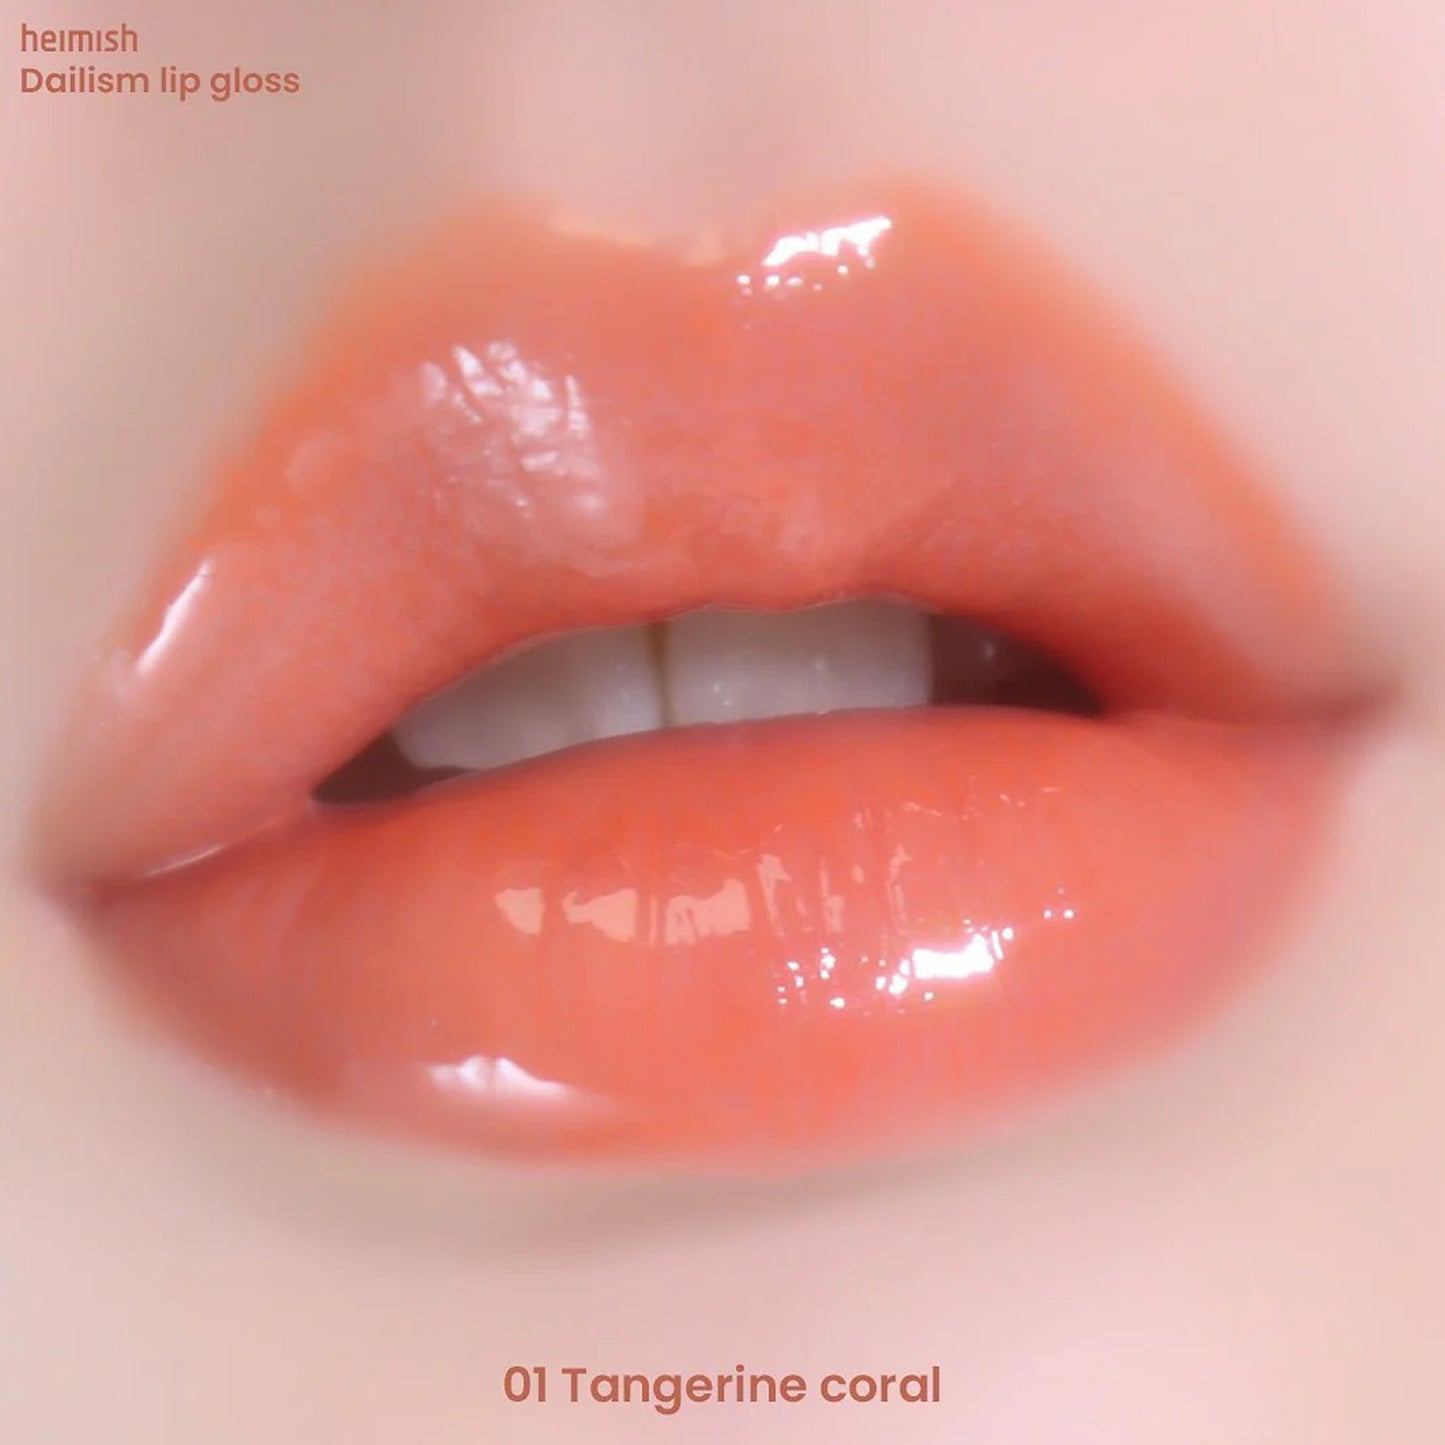 [Heimish] Dailism Lip Gloss (3 colors)